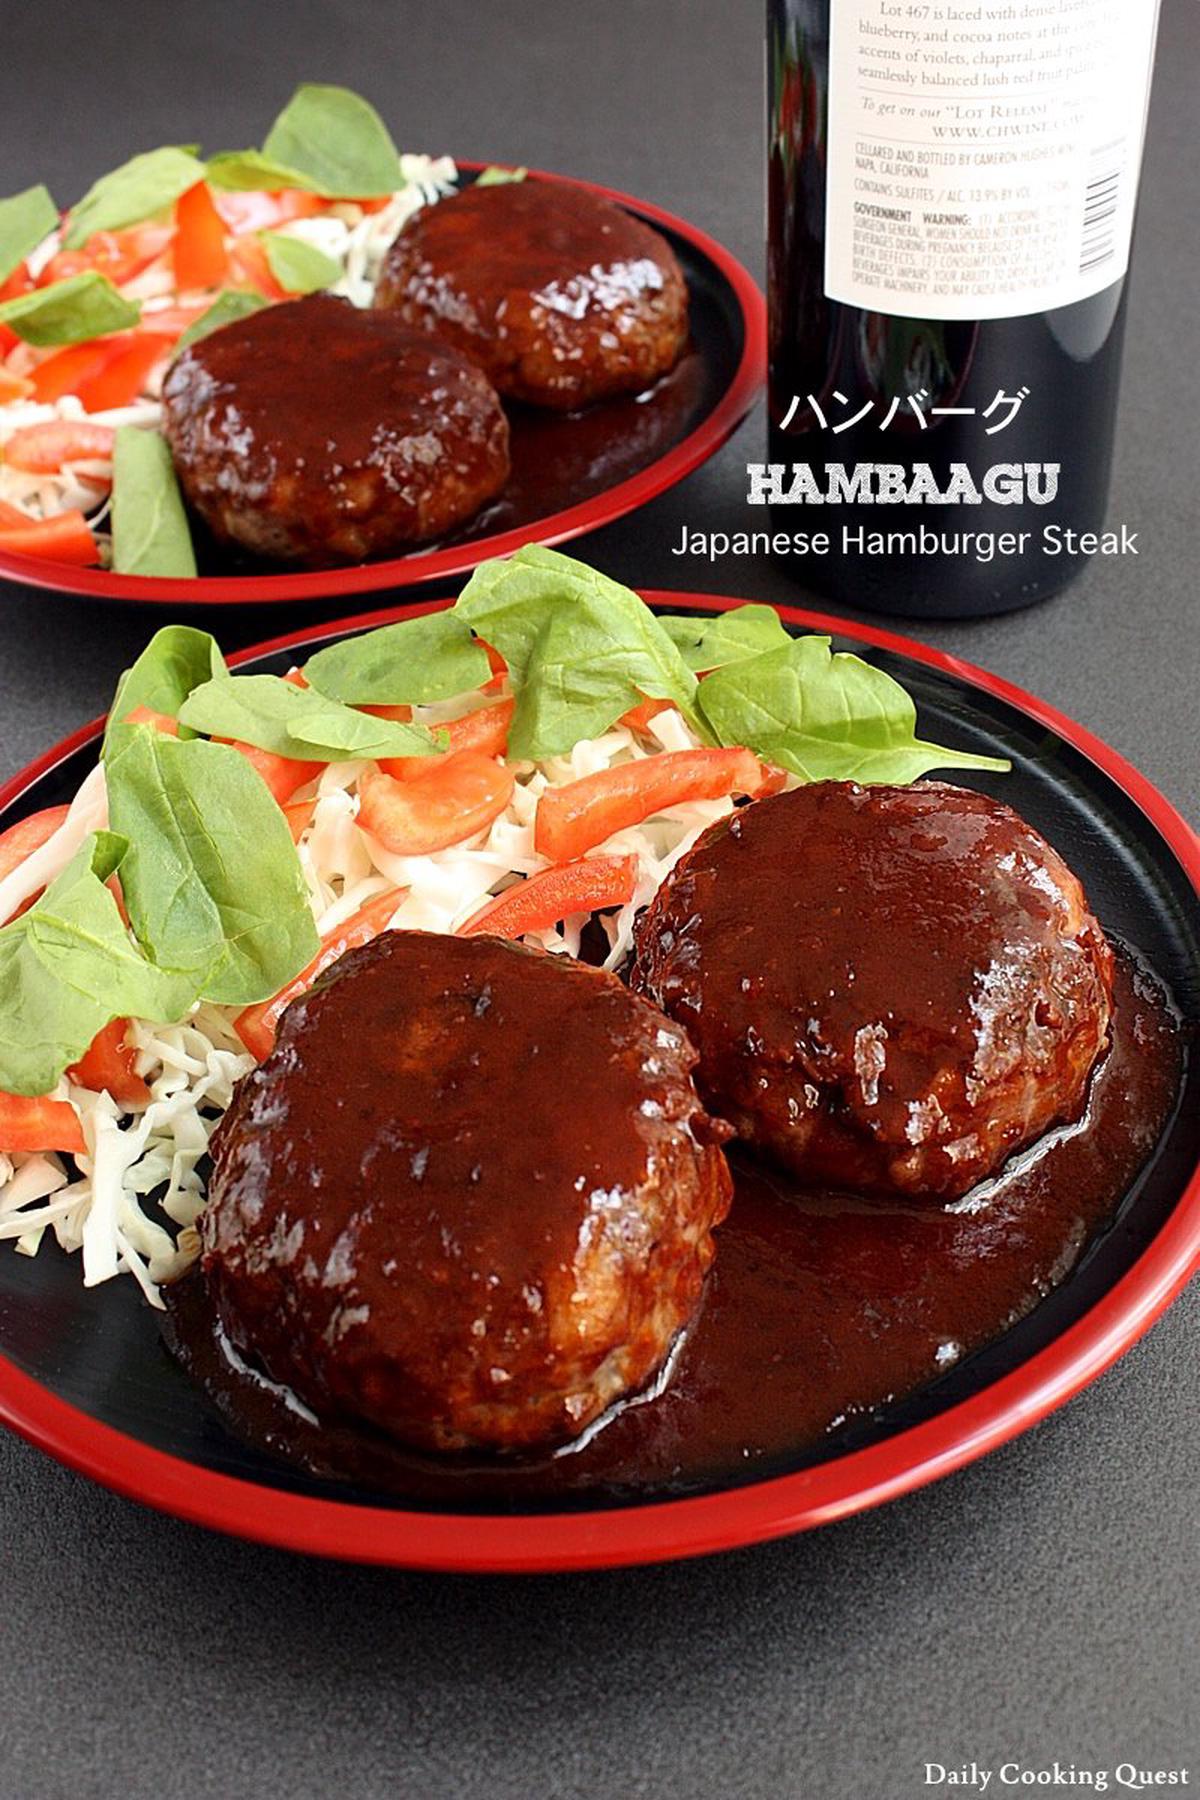 Hambaagu - Japanese Hamburger Steak